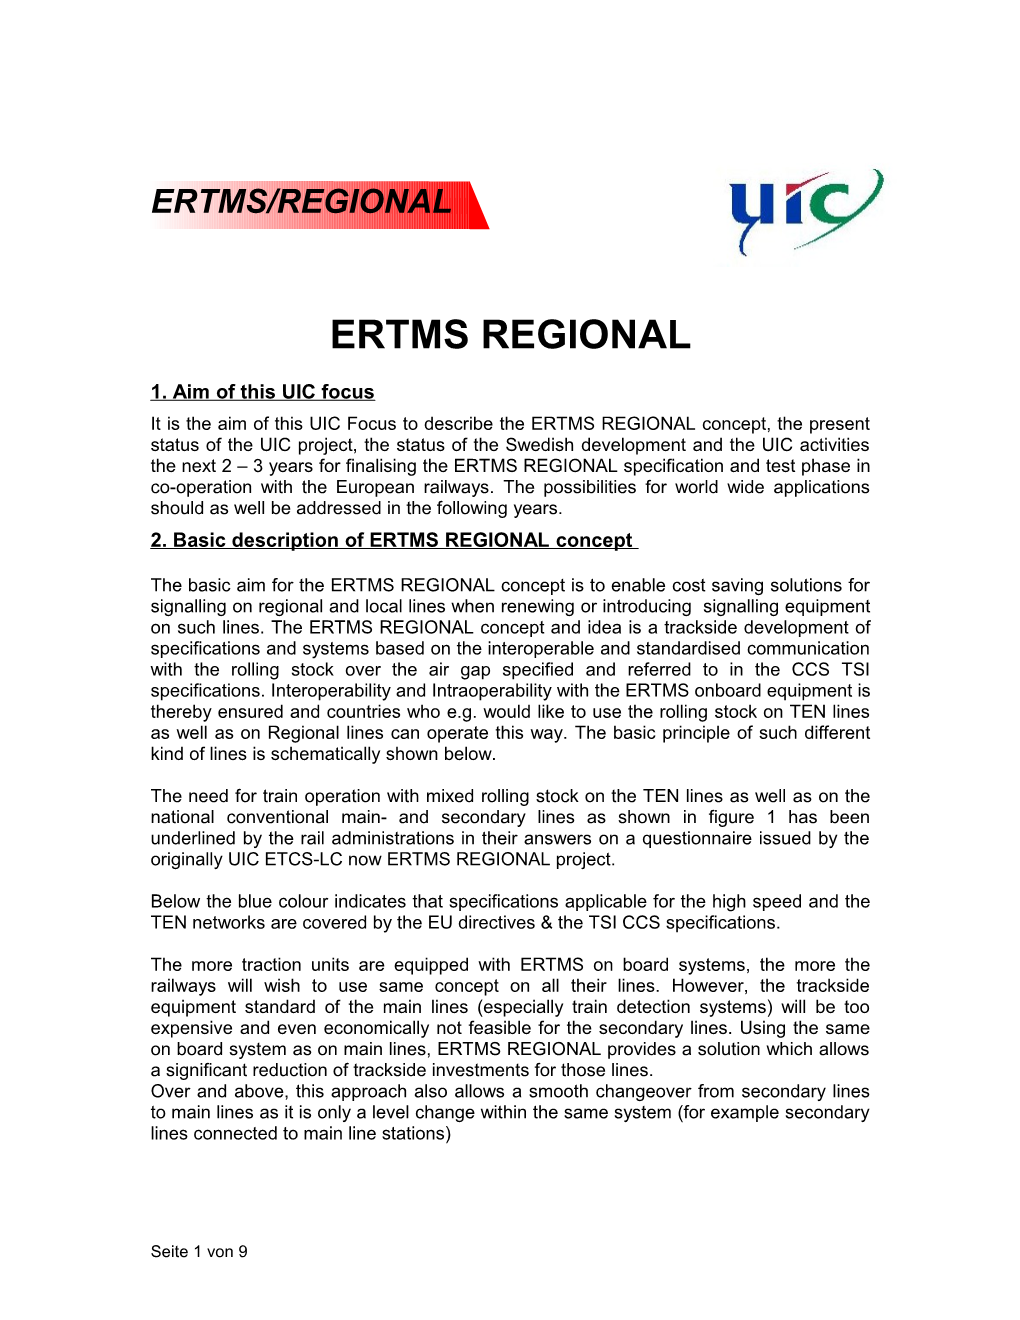 ERTMS REGIONAL 1. Aim of This UIC Focus